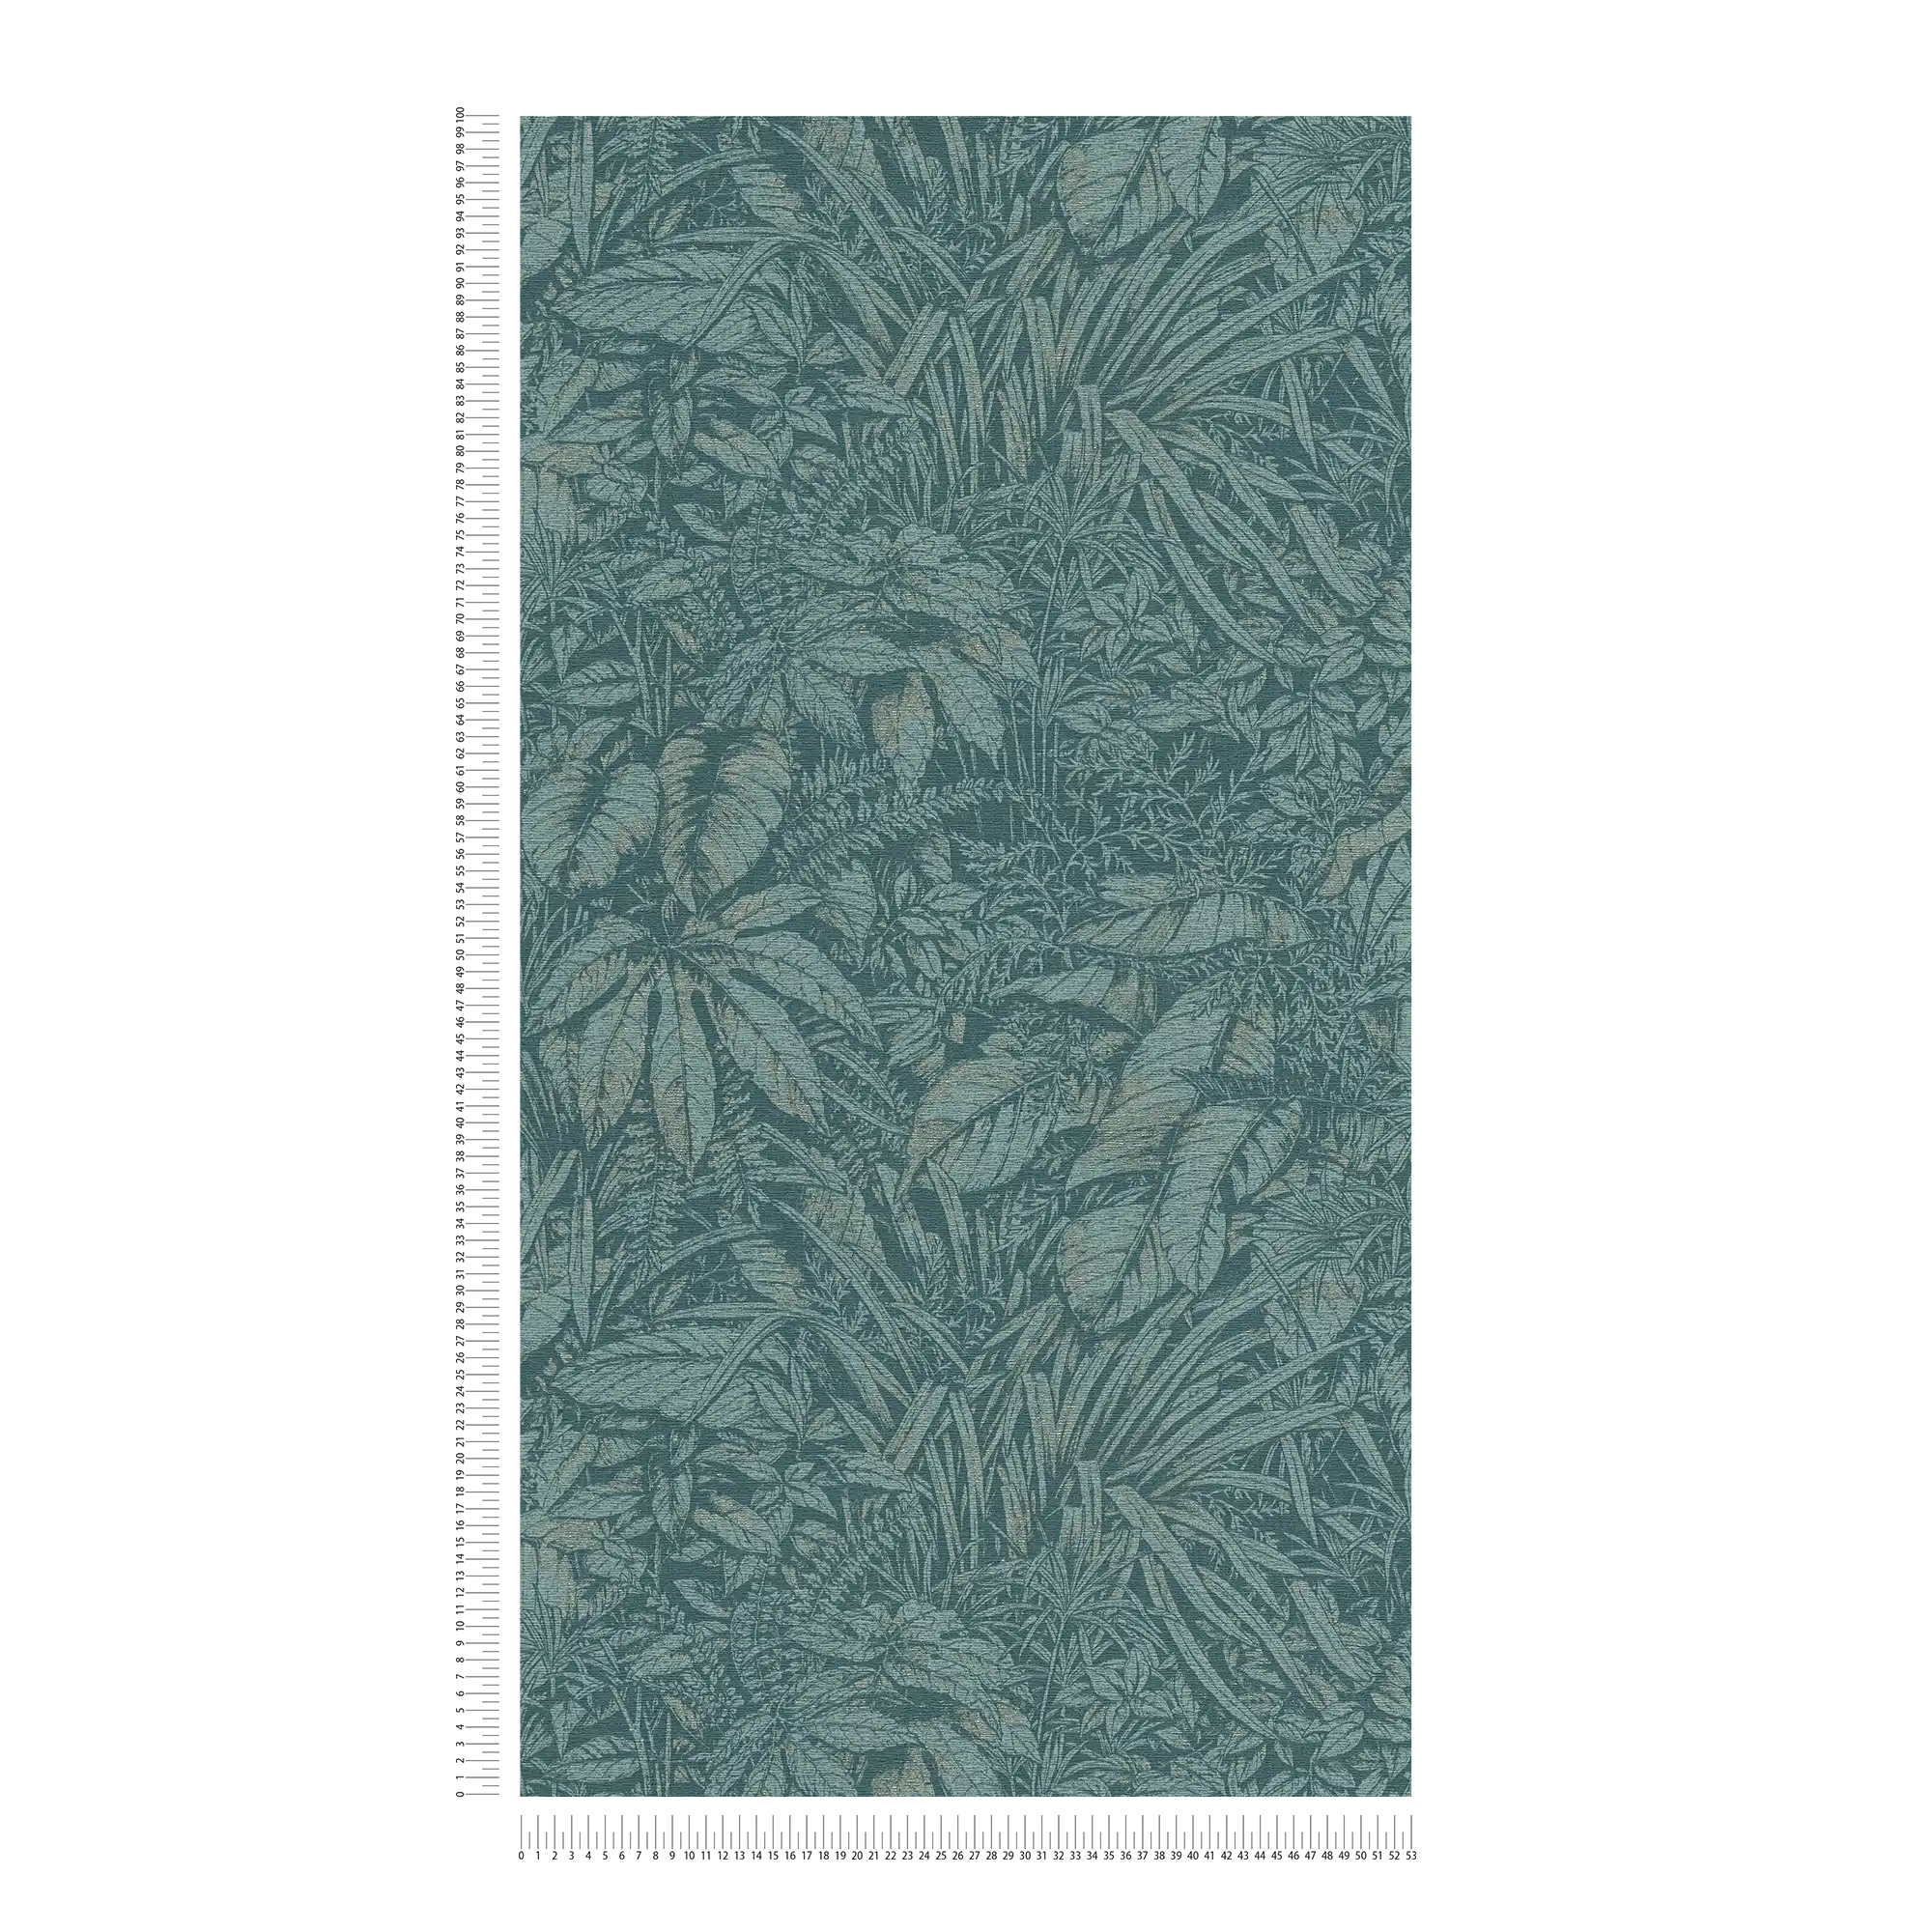             Carta da parati floreale in tessuto non tessuto con motivo a foglie di palma - blu, petrolio, argento
        